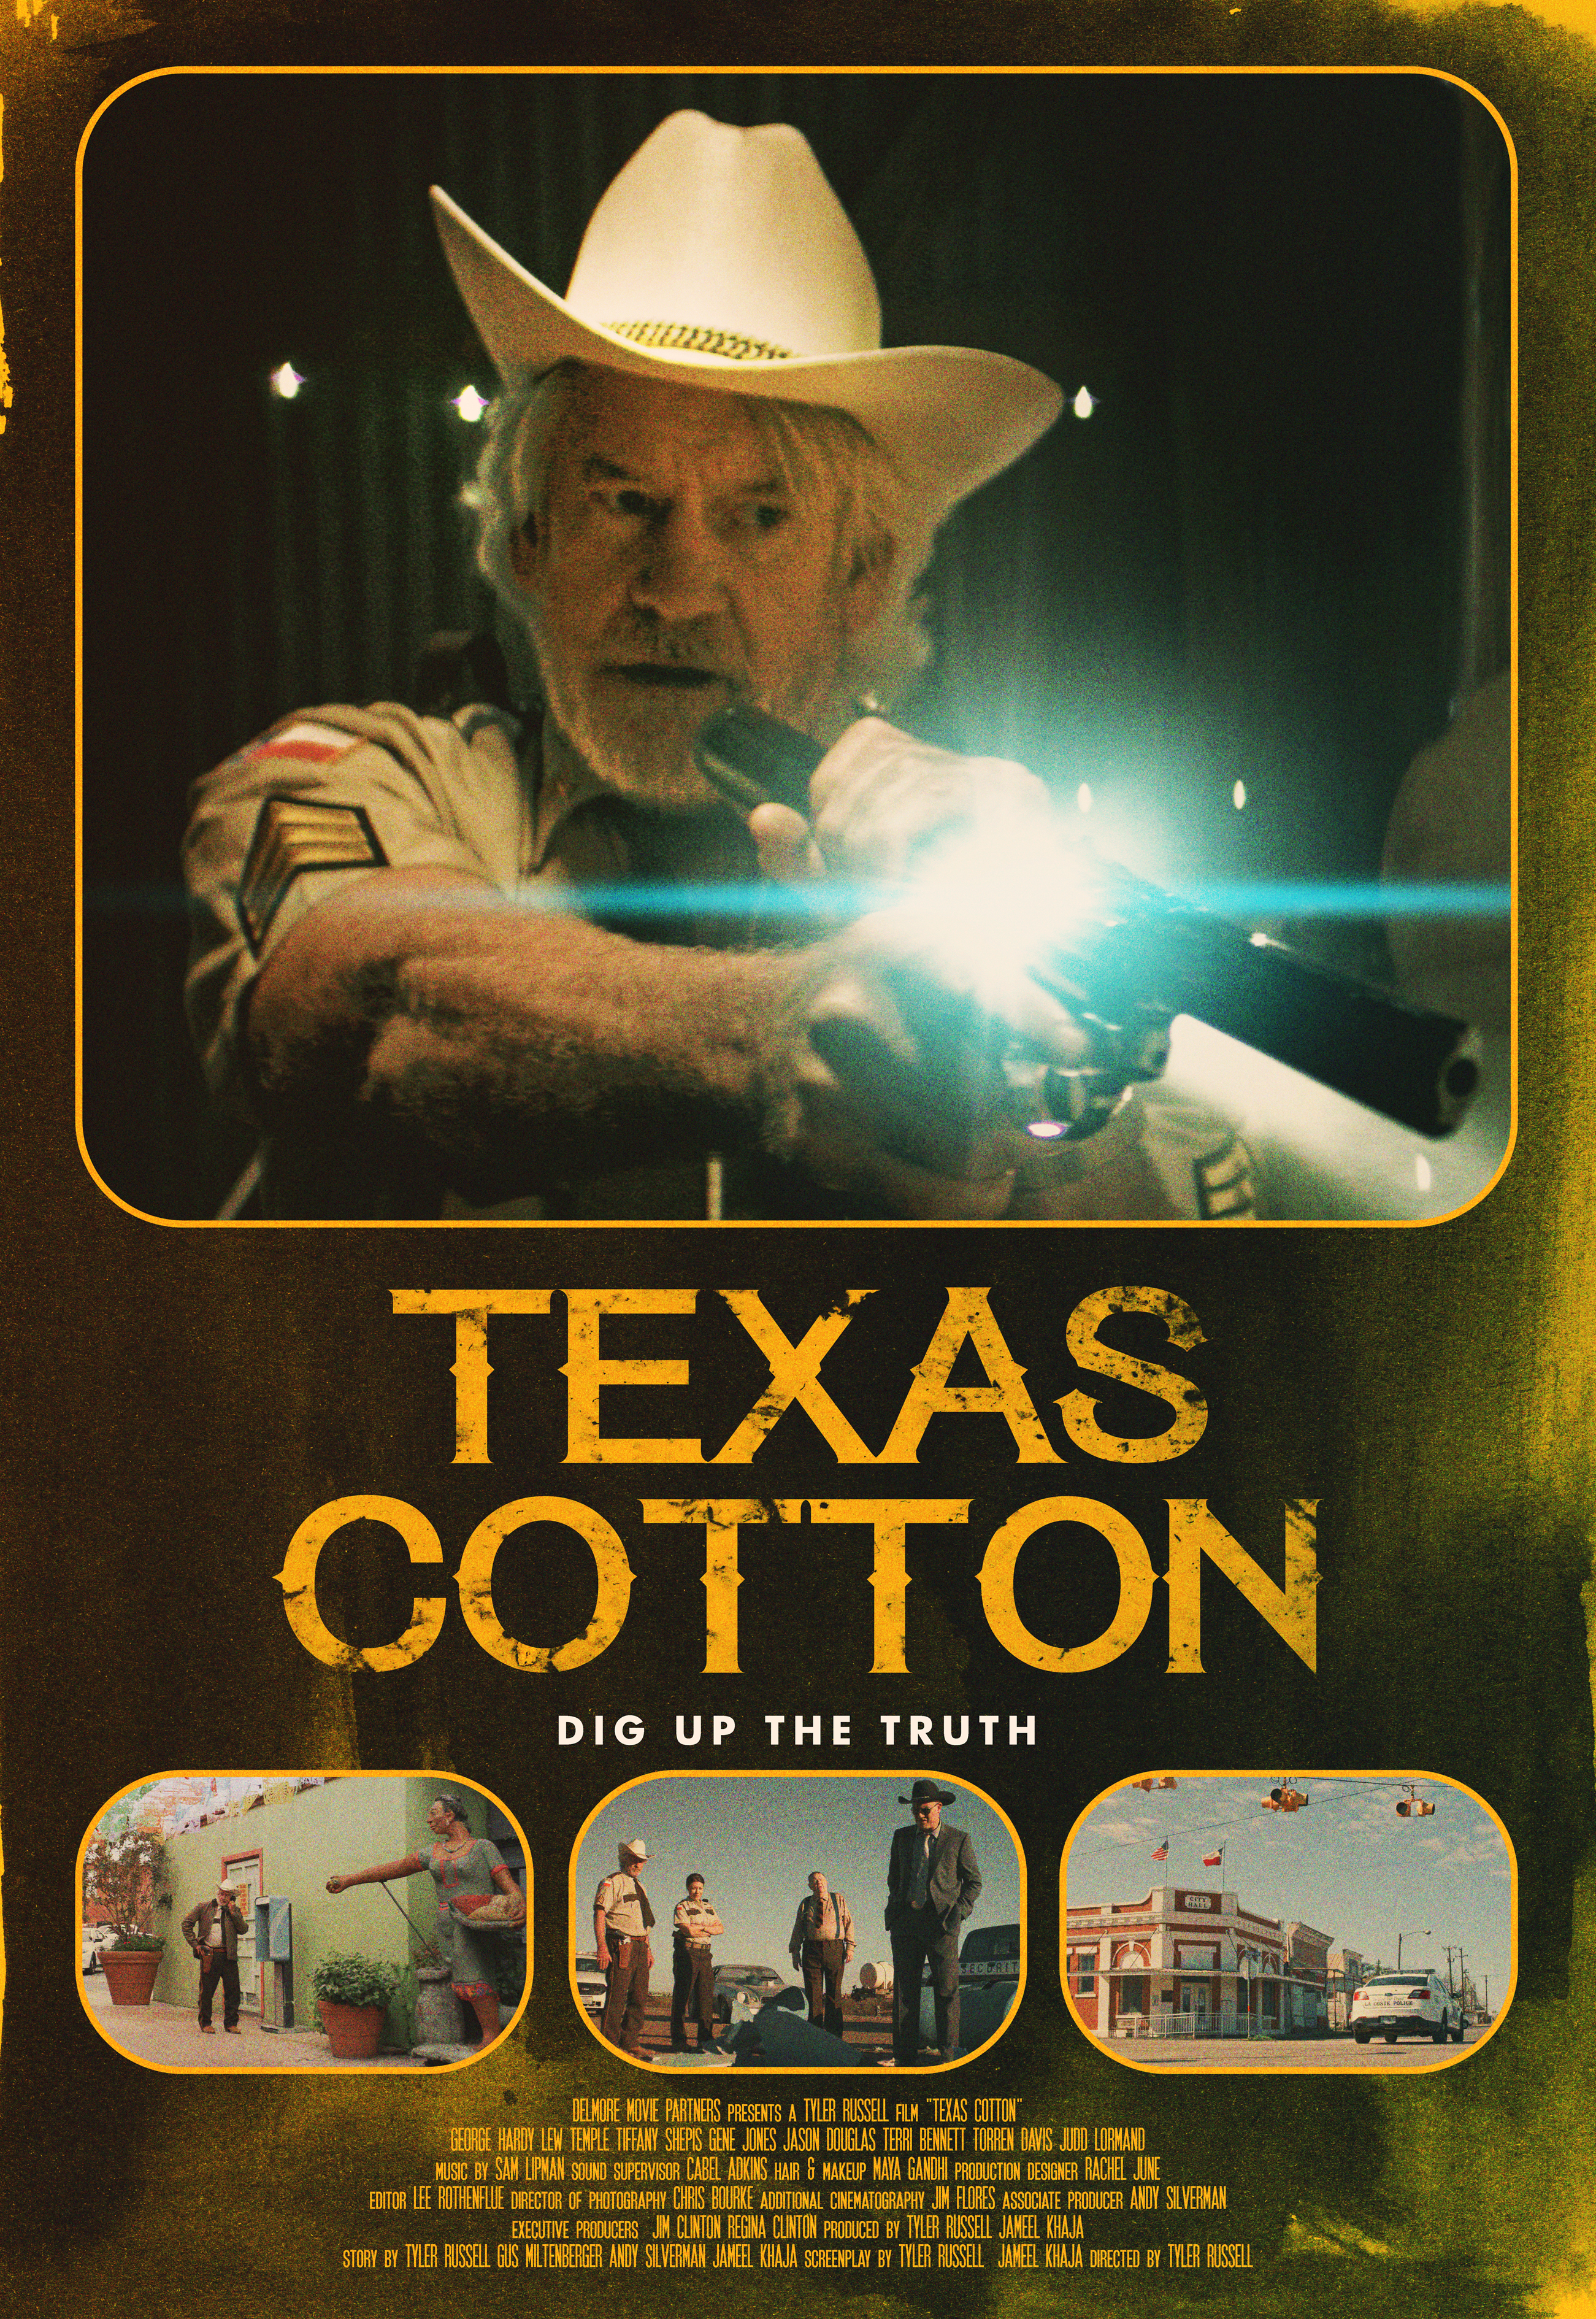 Nonton film Texas Cotton layarkaca21 indoxx1 ganool online streaming terbaru